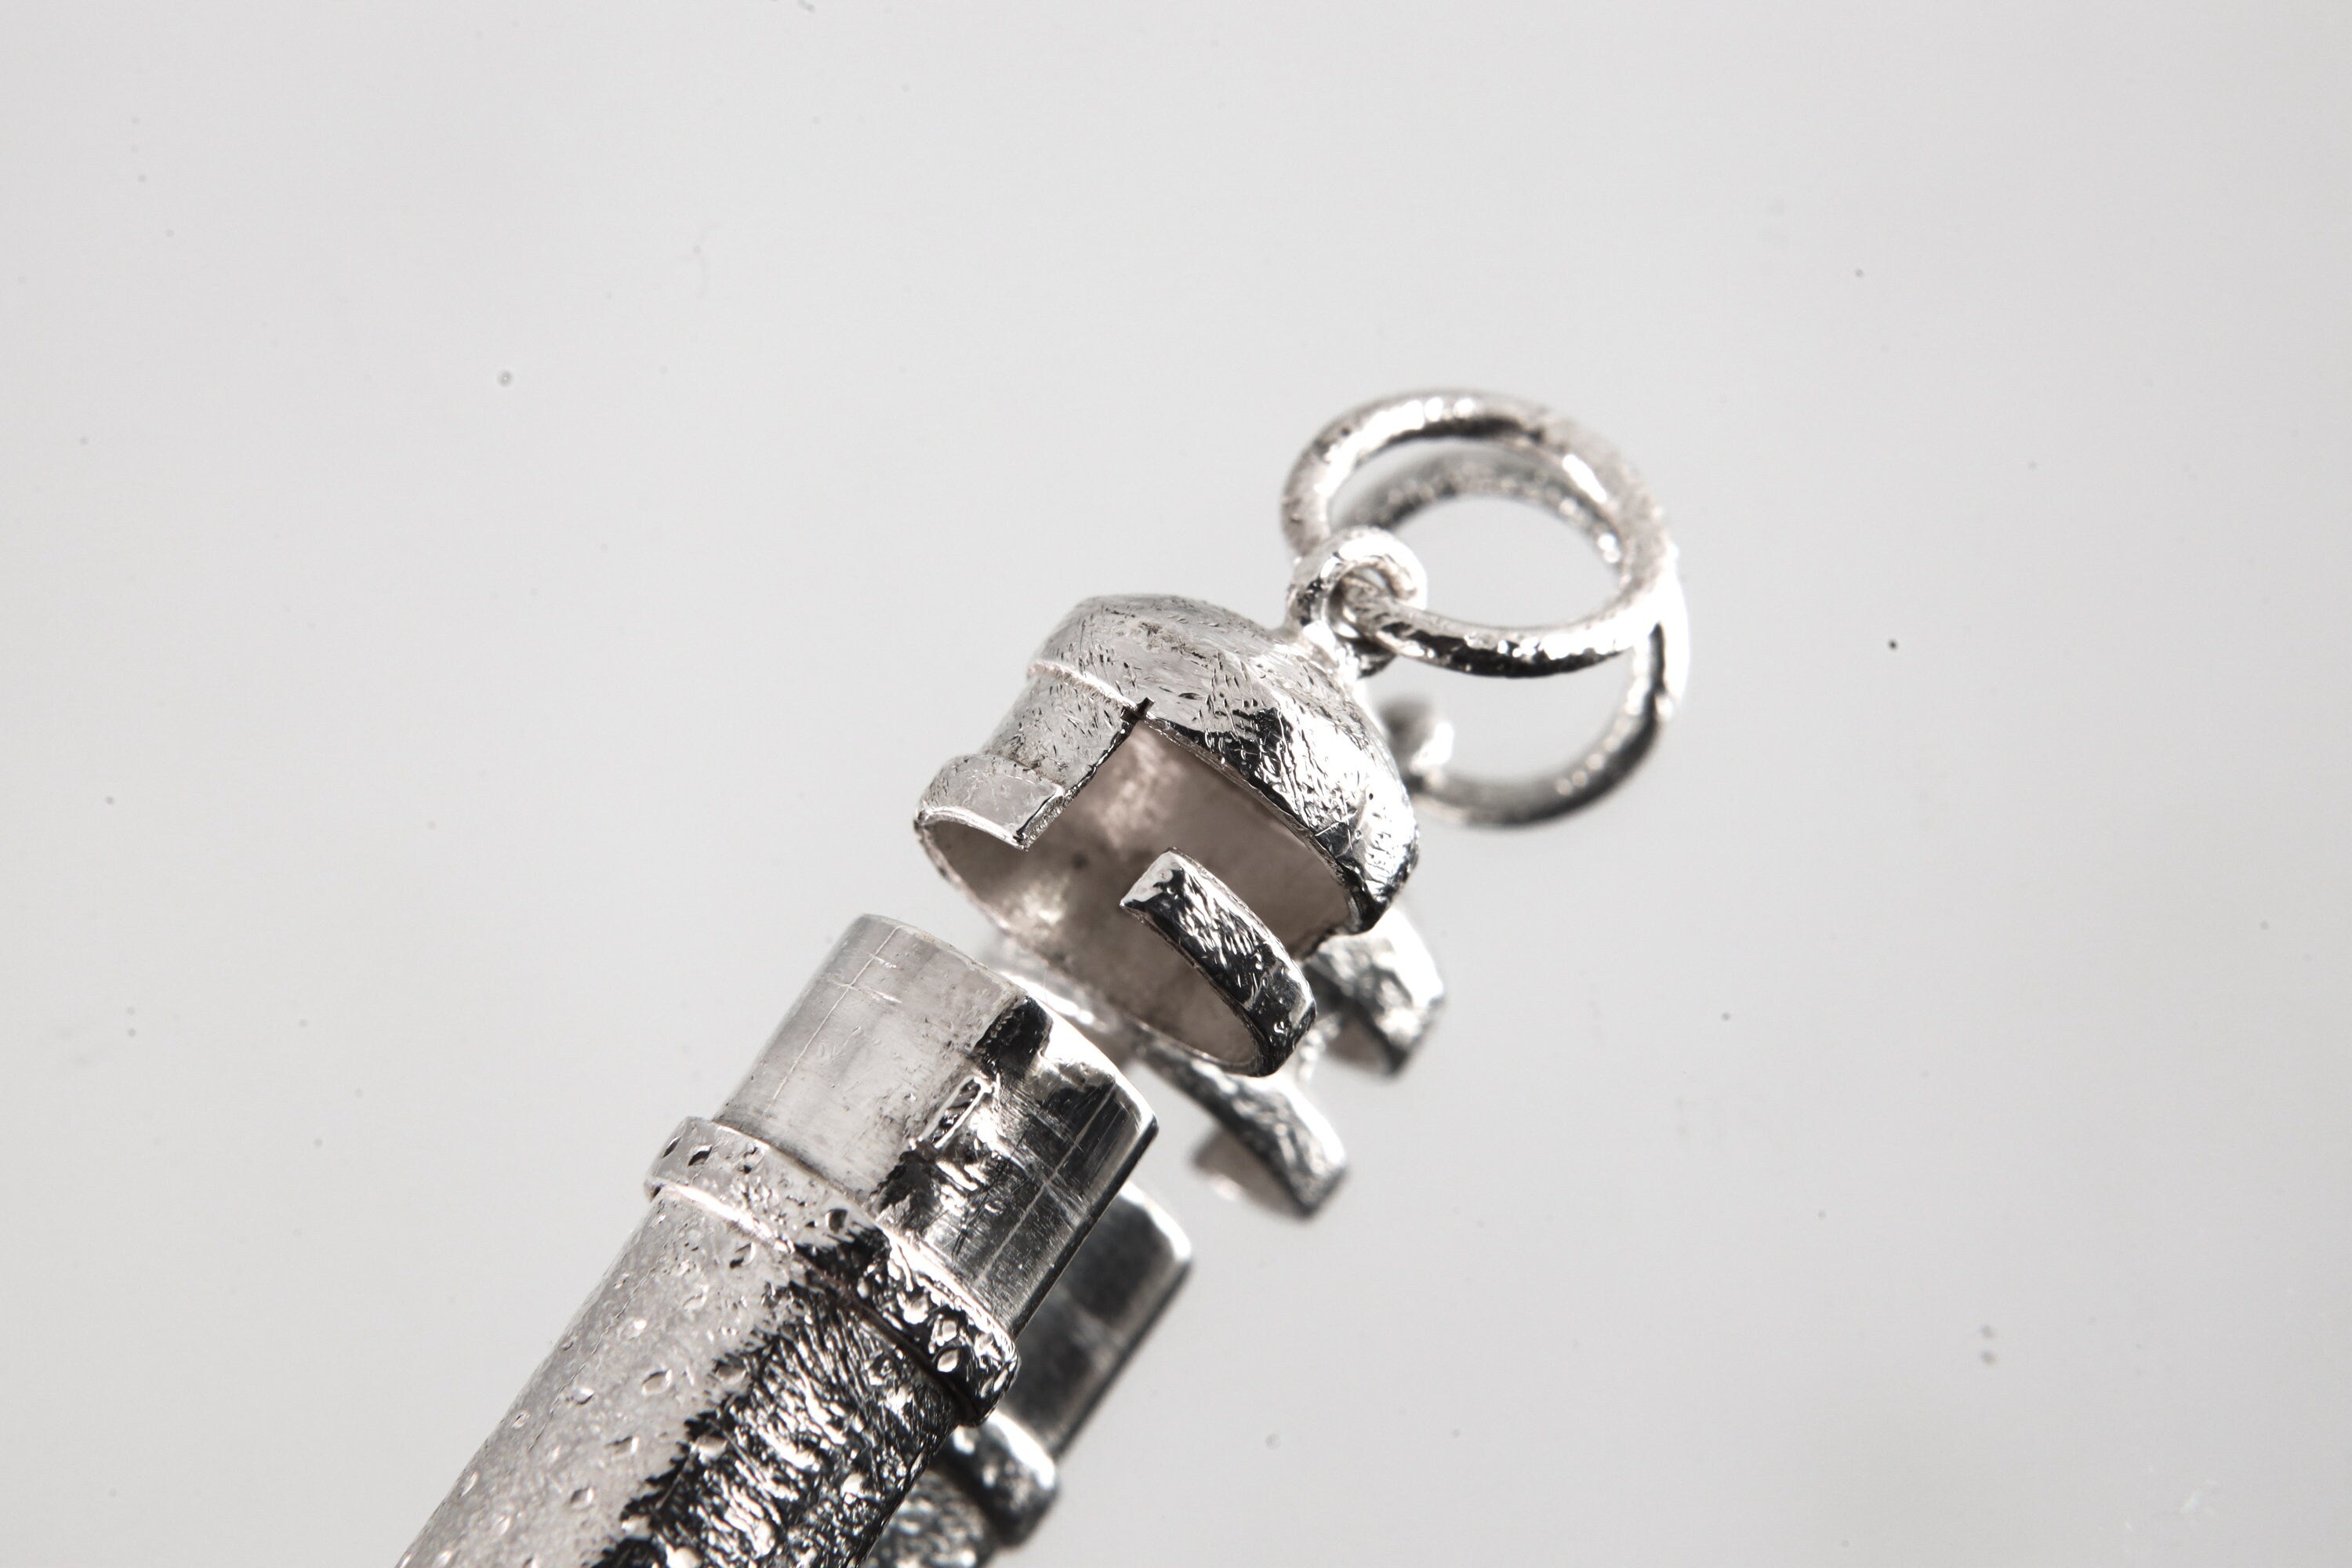 Aqua Aura Quartz Point - Solid Capsule Locket - Stash Urn - Textured & Sterling Silver Pendant